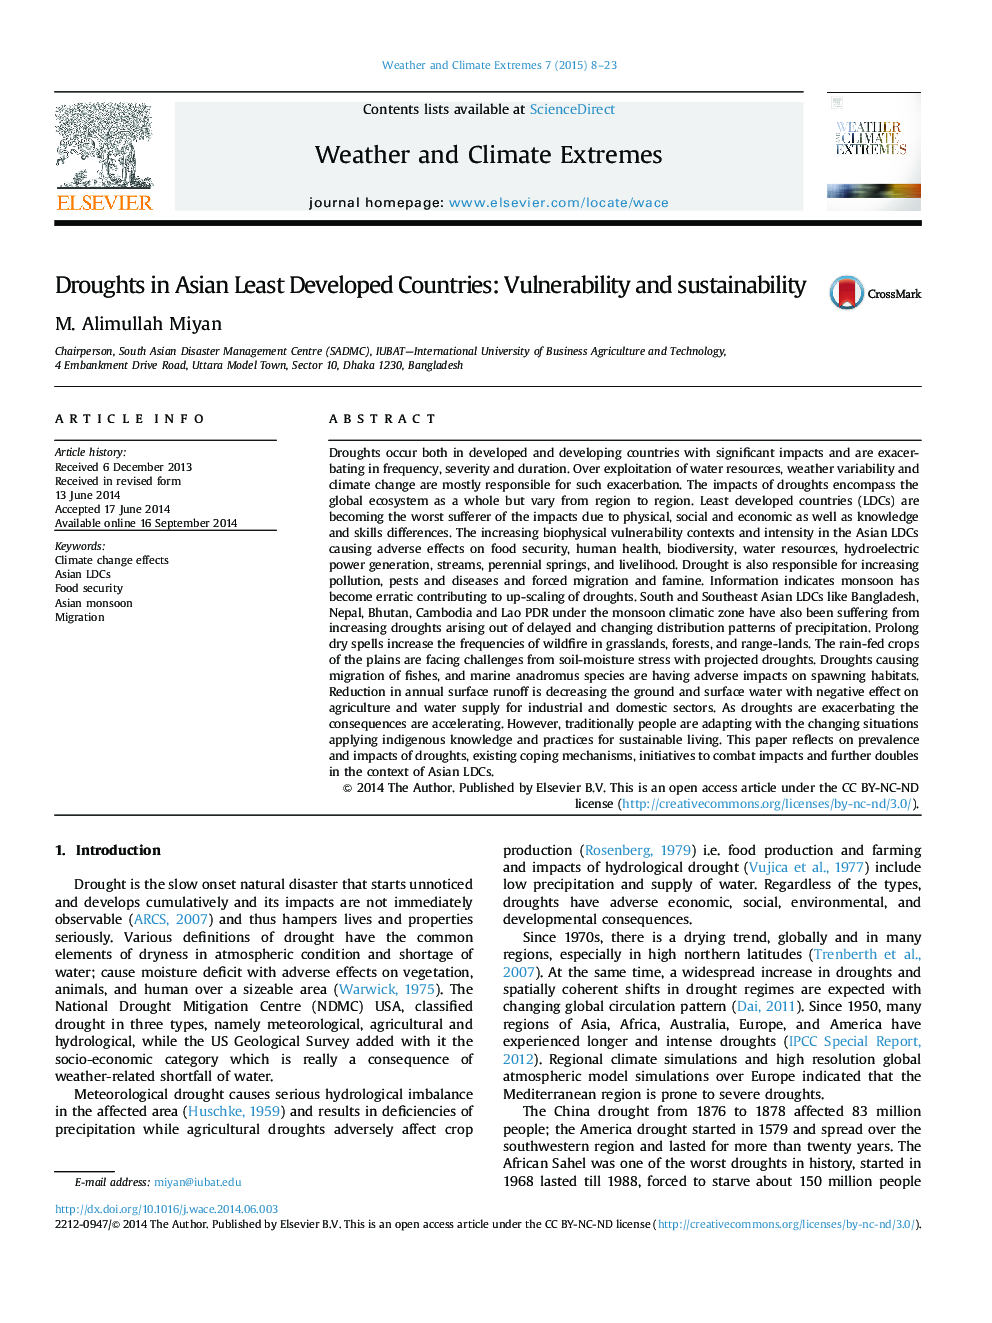 خشکسالی در کشورهای توسعه یافته آسیا: آسیب پذیری و پایداری 